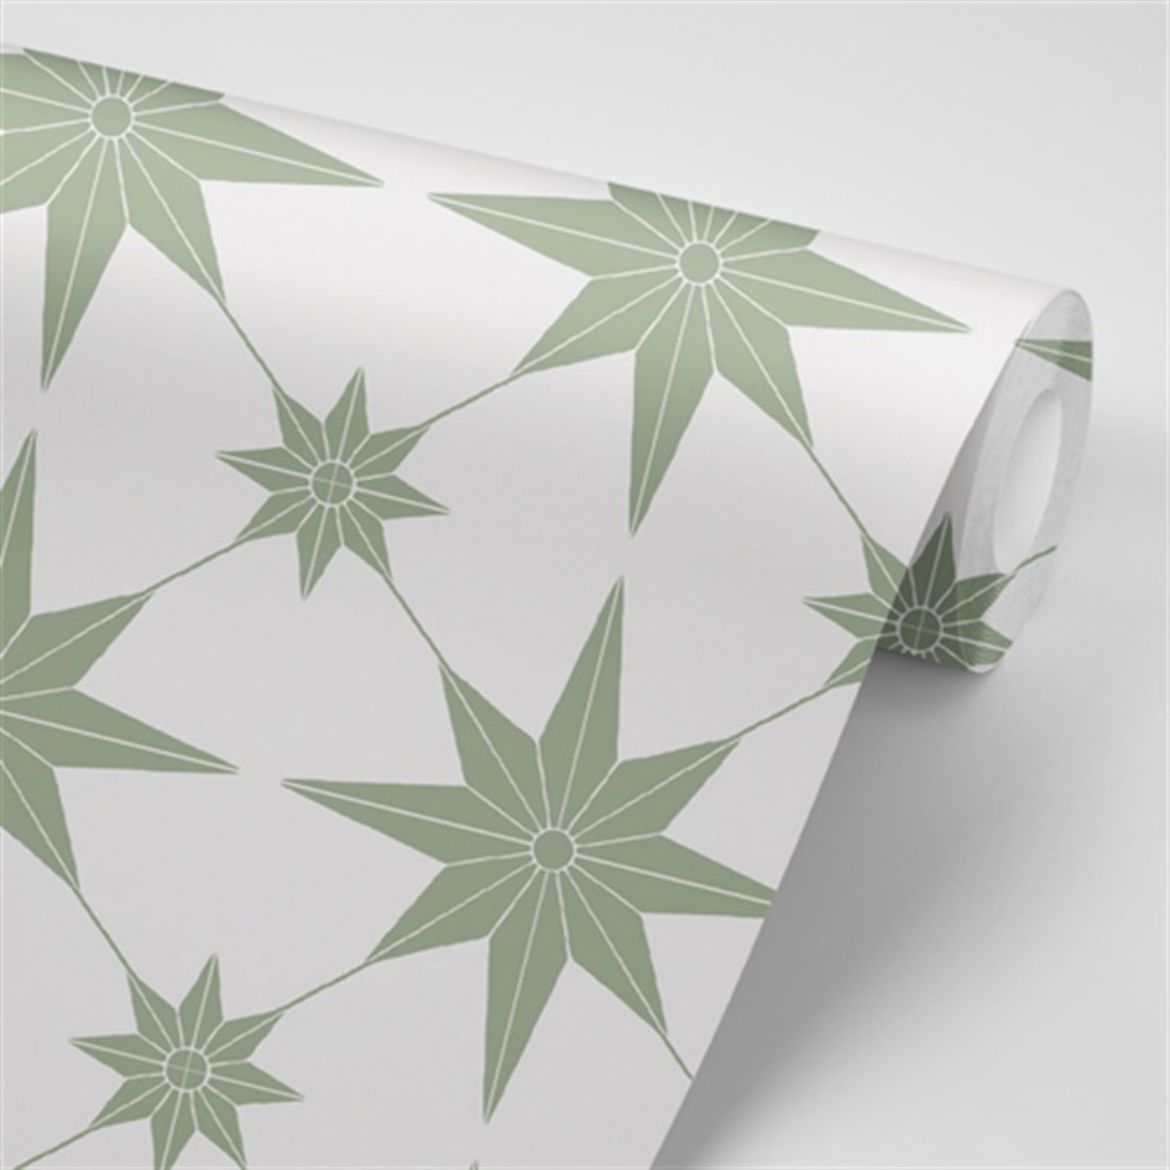 Tasarım Yıldız Desenli Duvar Kağıdı TSD-25 resmi